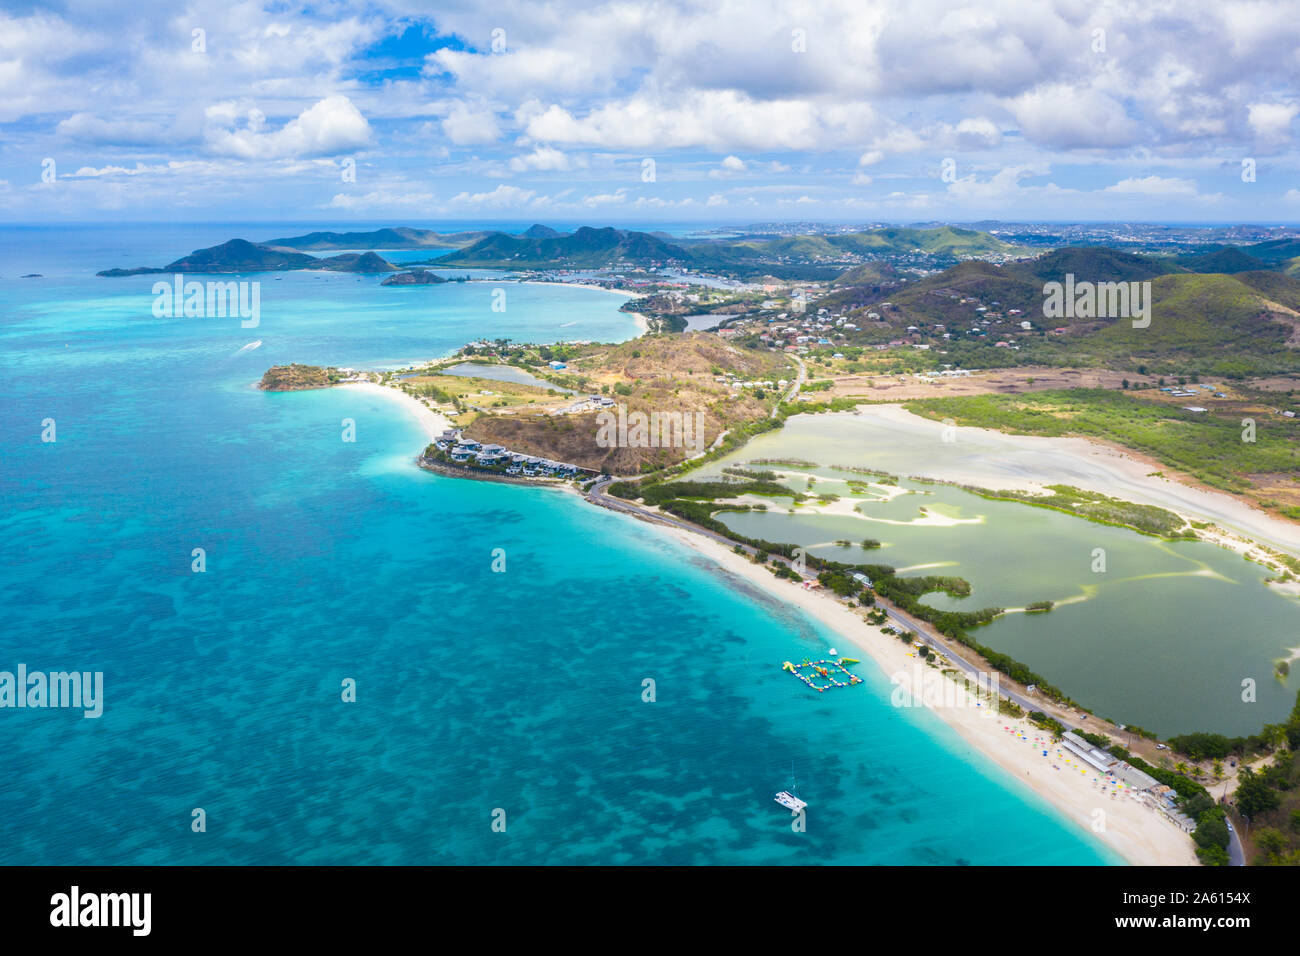 Vue aérienne par drone de Darkwood Beach et lagon tropical, Antigua, Iles sous le vent, Antilles, Caraïbes, Amérique Centrale Banque D'Images